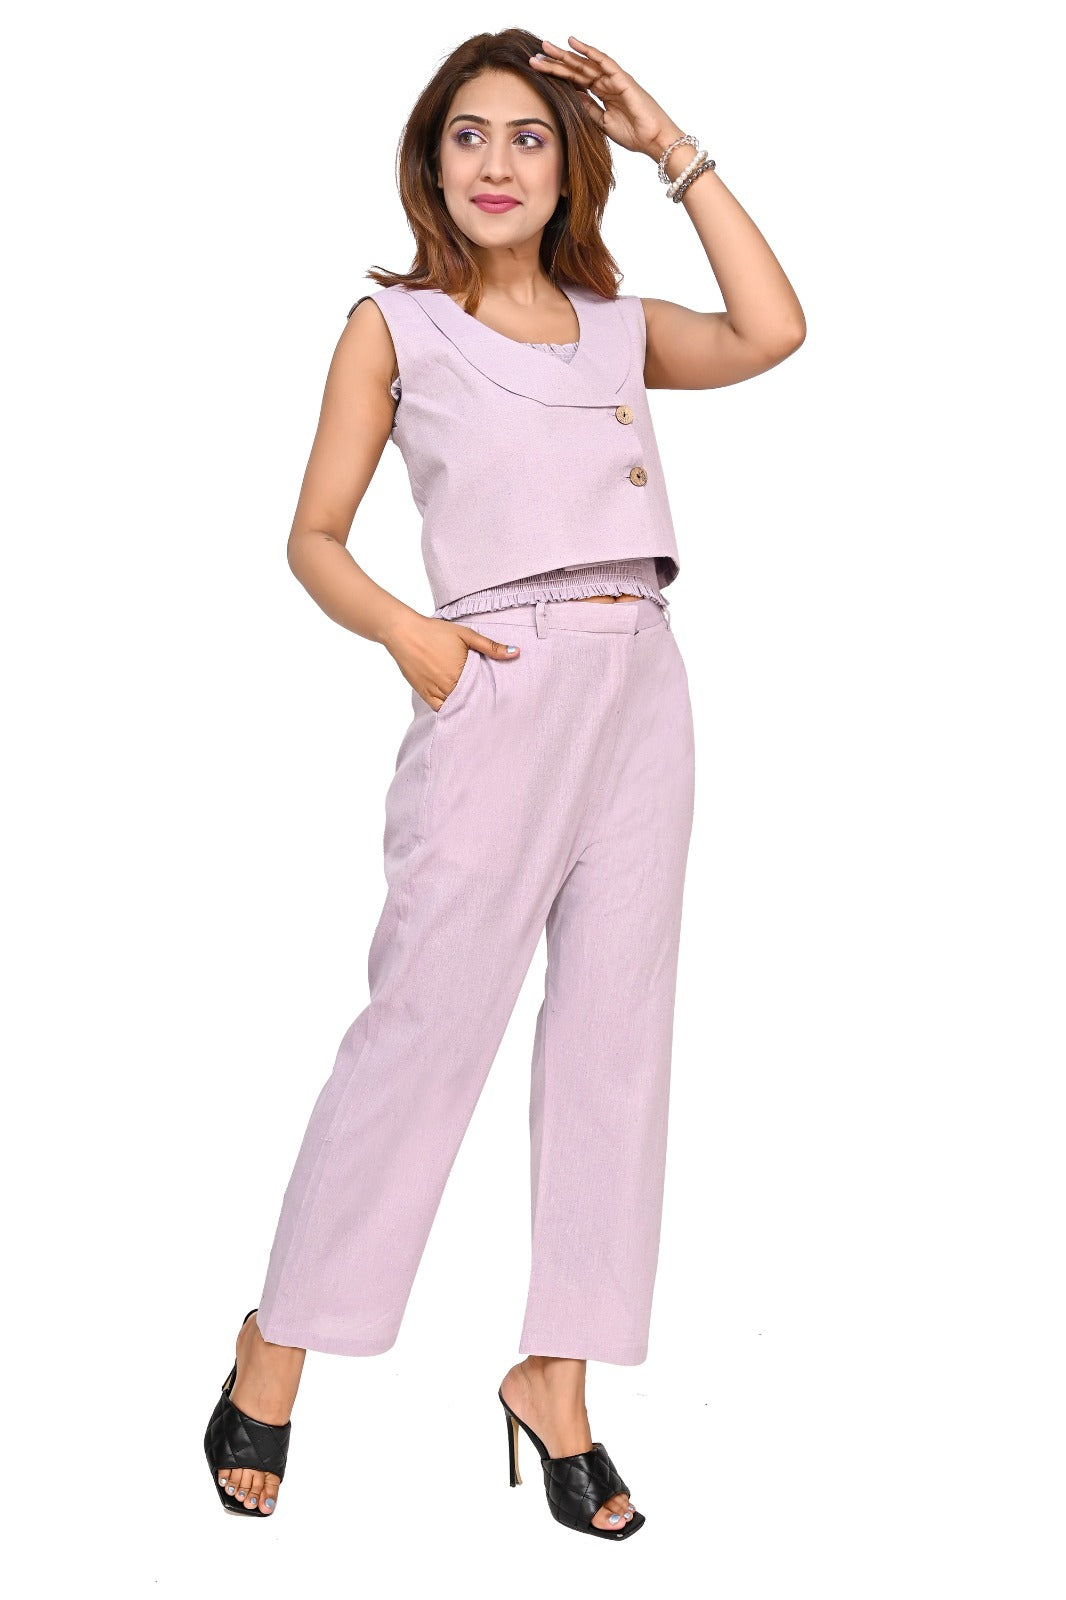 Nirmal online Premium Cotton co-ord set for Women in Purple Colour